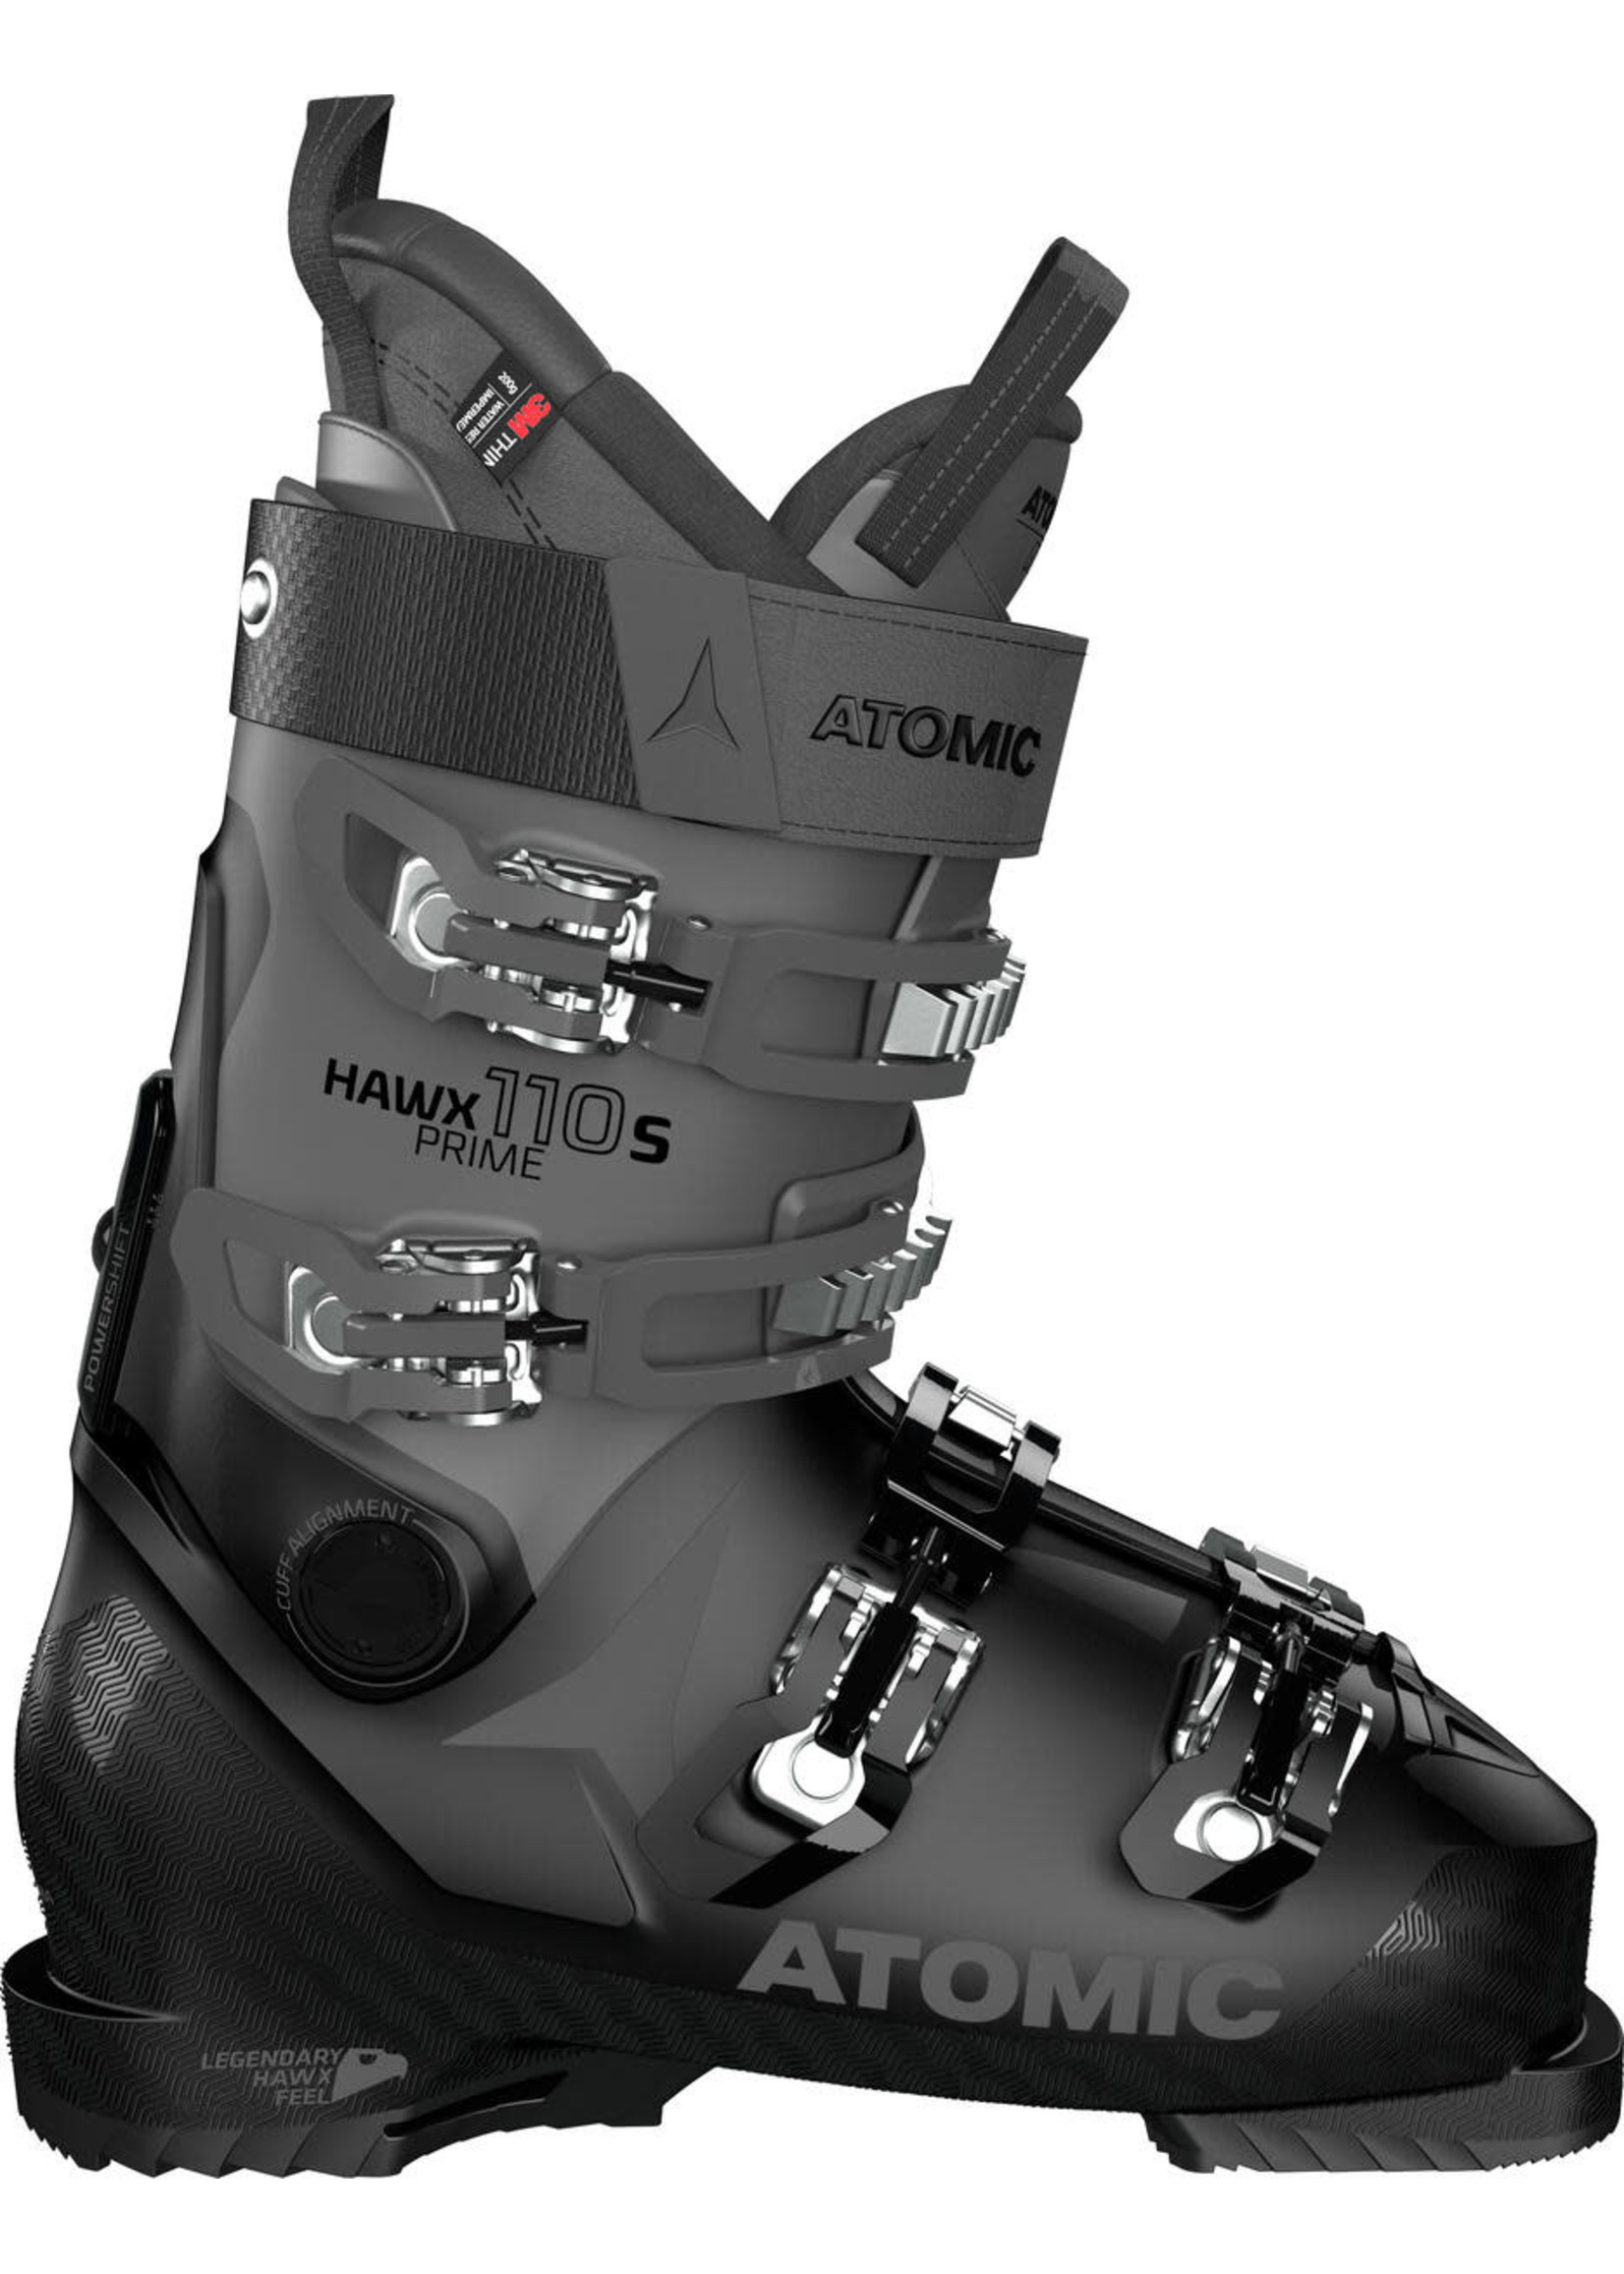 Atomic Boot Alpine Hawx Prime 110S